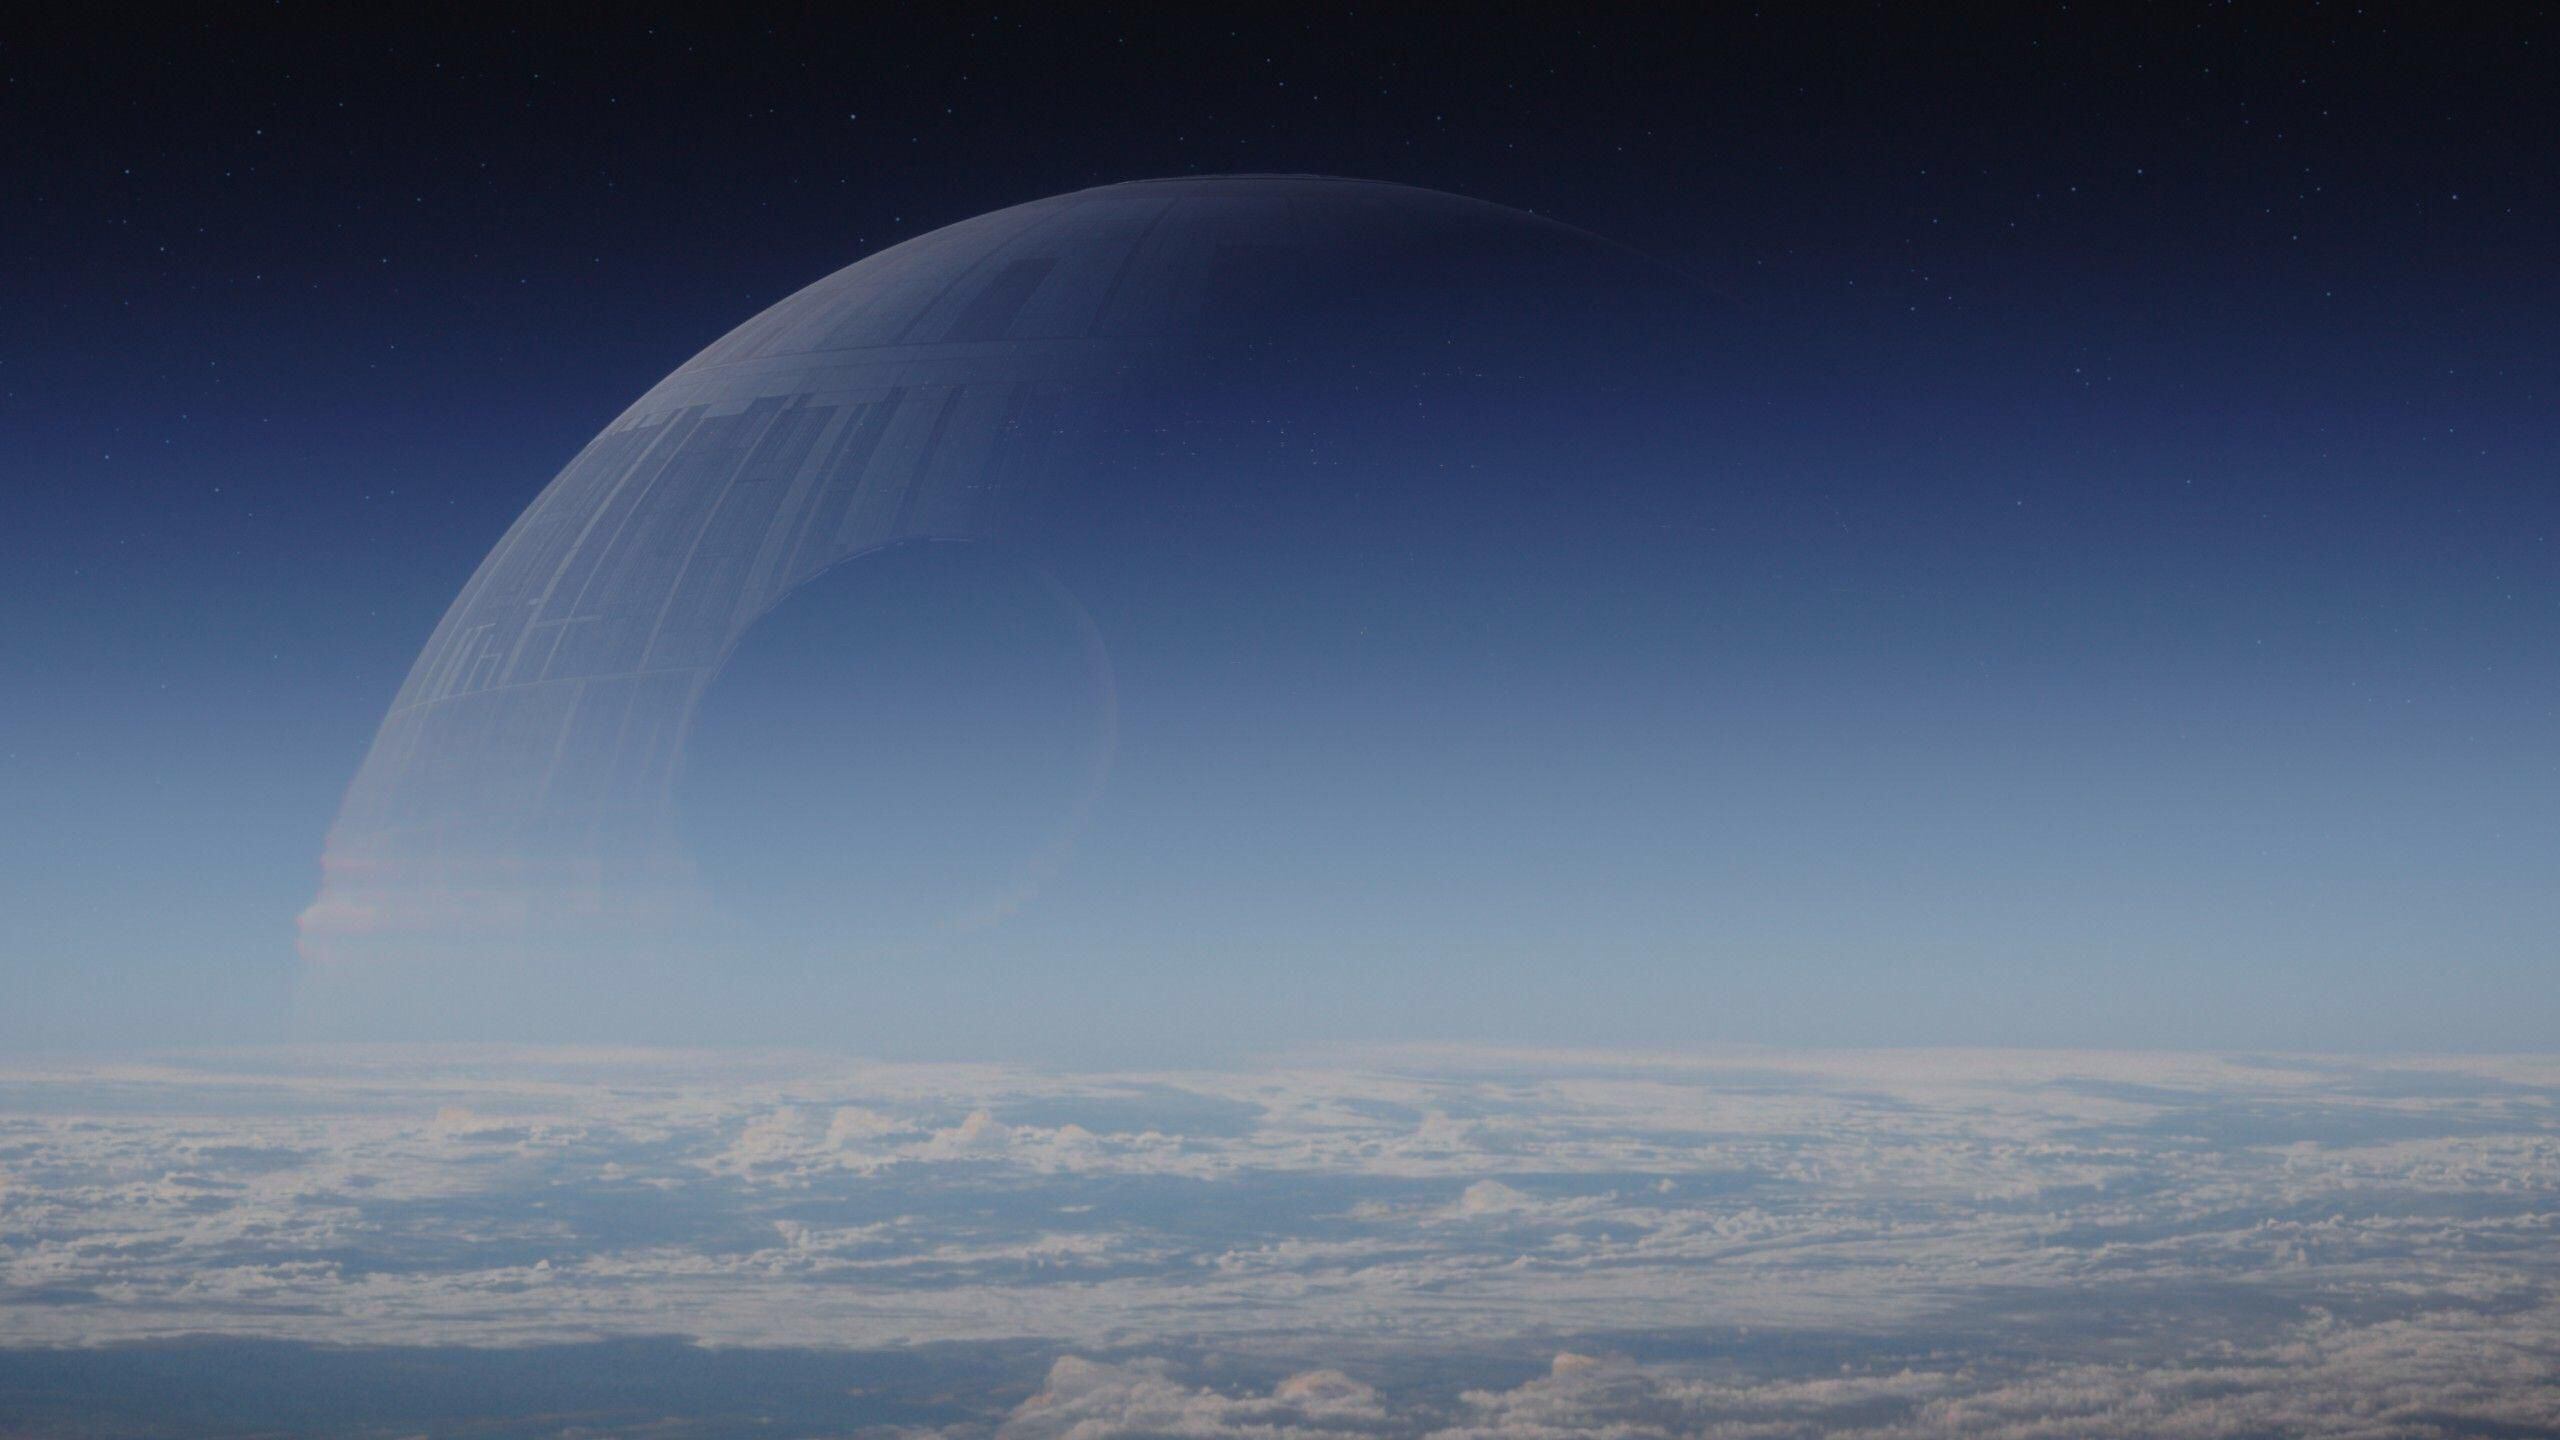 Películas de ciencia ficción como las de la saga de Star Wars popularizaron el uso de tecnologías láser en combate. En la imagen, se aprecia la mítica nave Death Star, capaz de propulsar un láser destructor de mundos. Fuente: Disney.